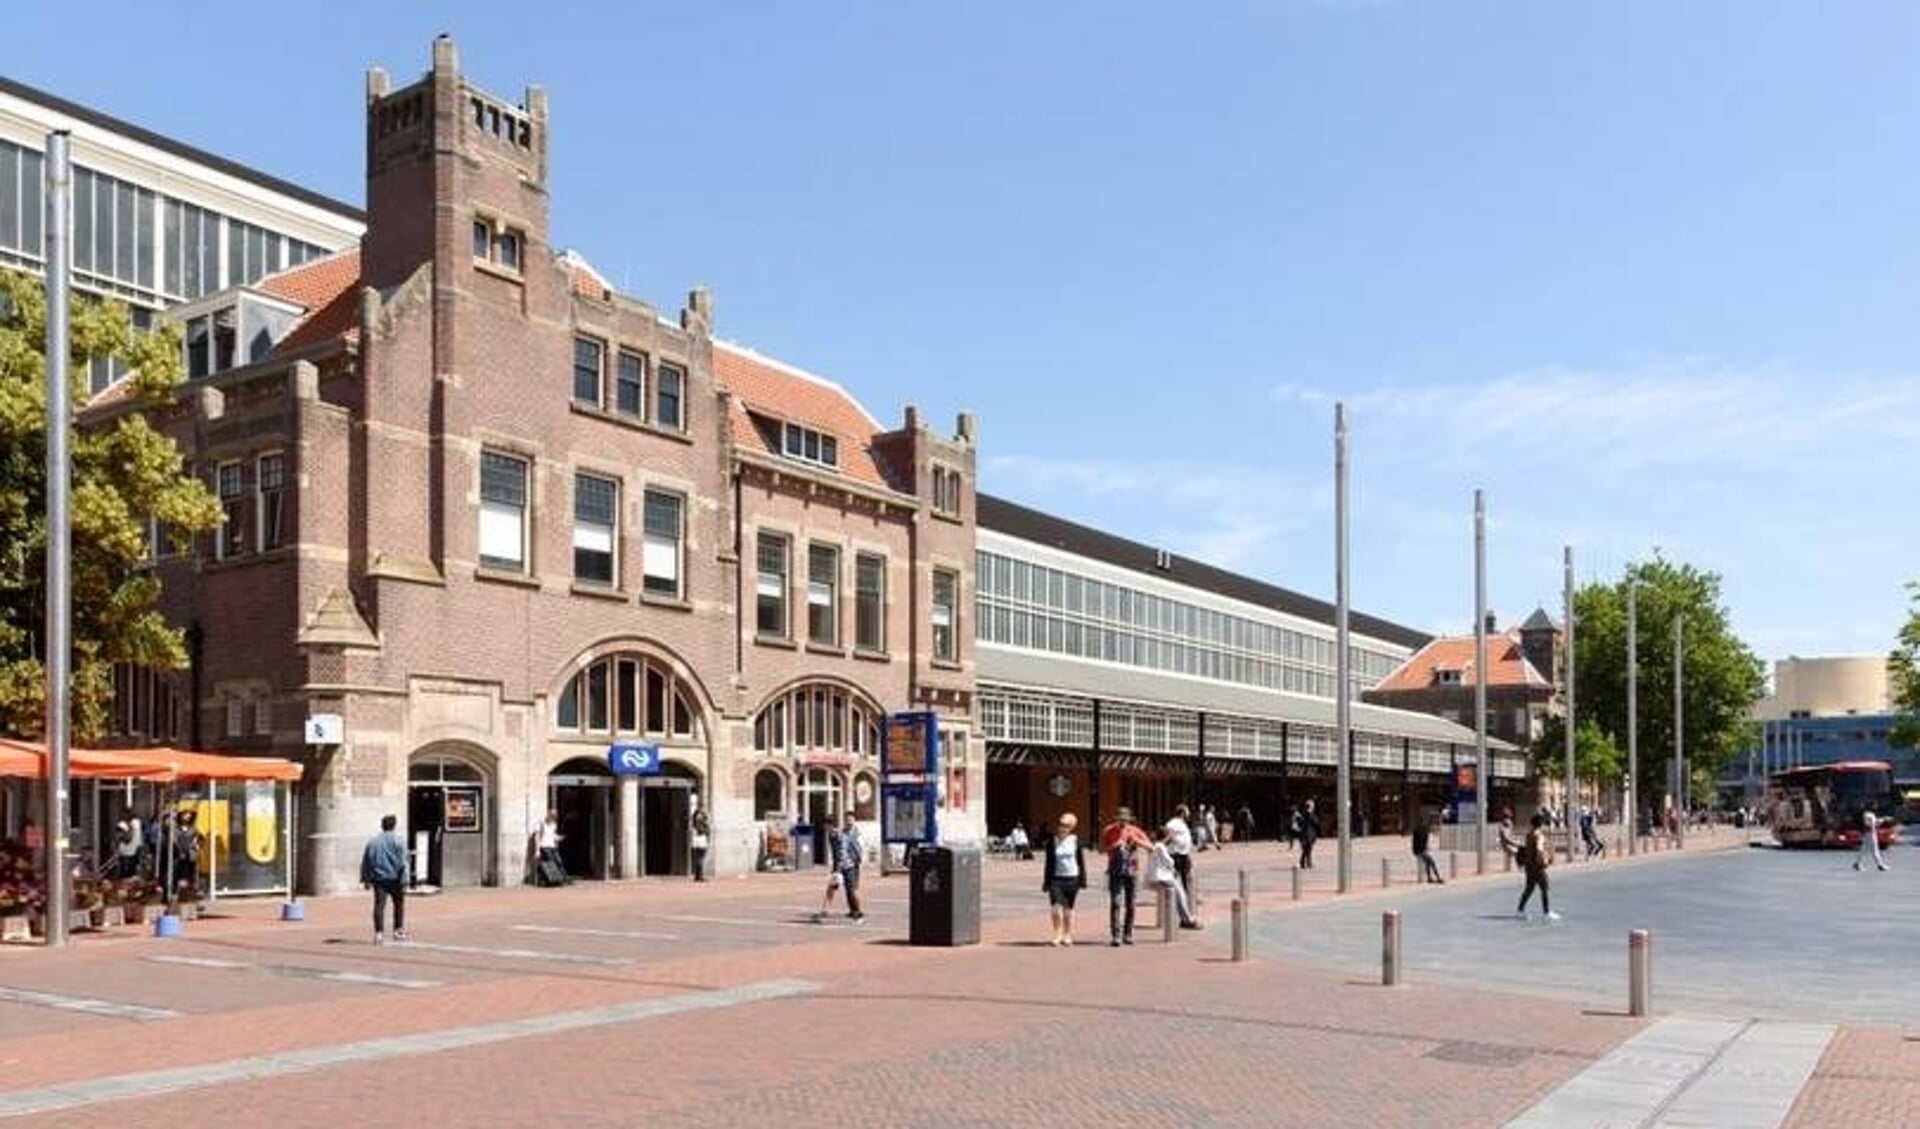 formaat Artefact Initiatief Filmopnames rondom station Haarlem voor nieuwe Nederlandse dramaserie -  Haarlems Weekblad | Nieuws uit de regio Haarlem